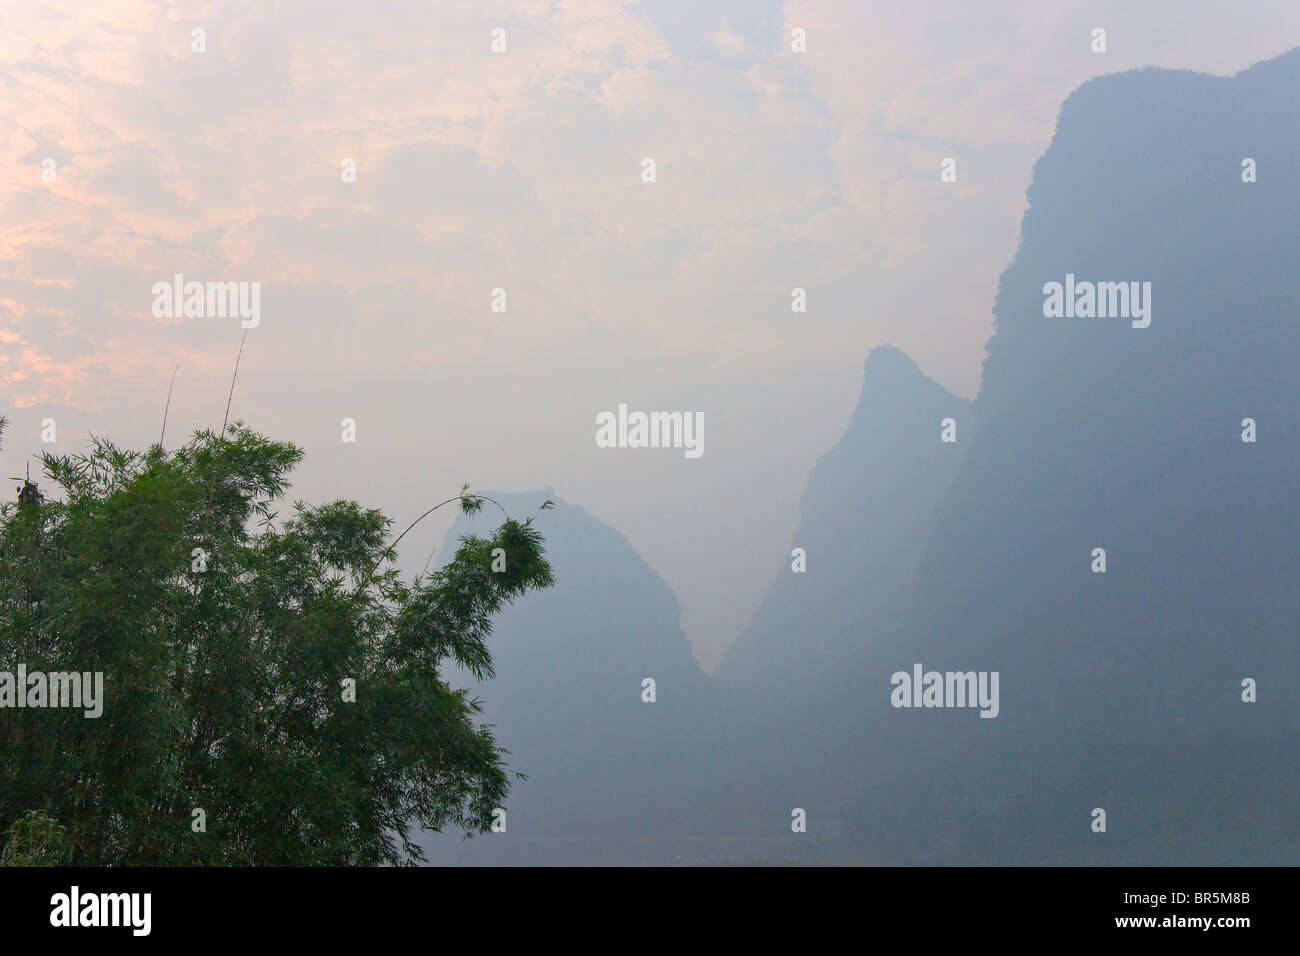 Karst hills in Li River area,Yangshuo, Guangxi, China Stock Photo